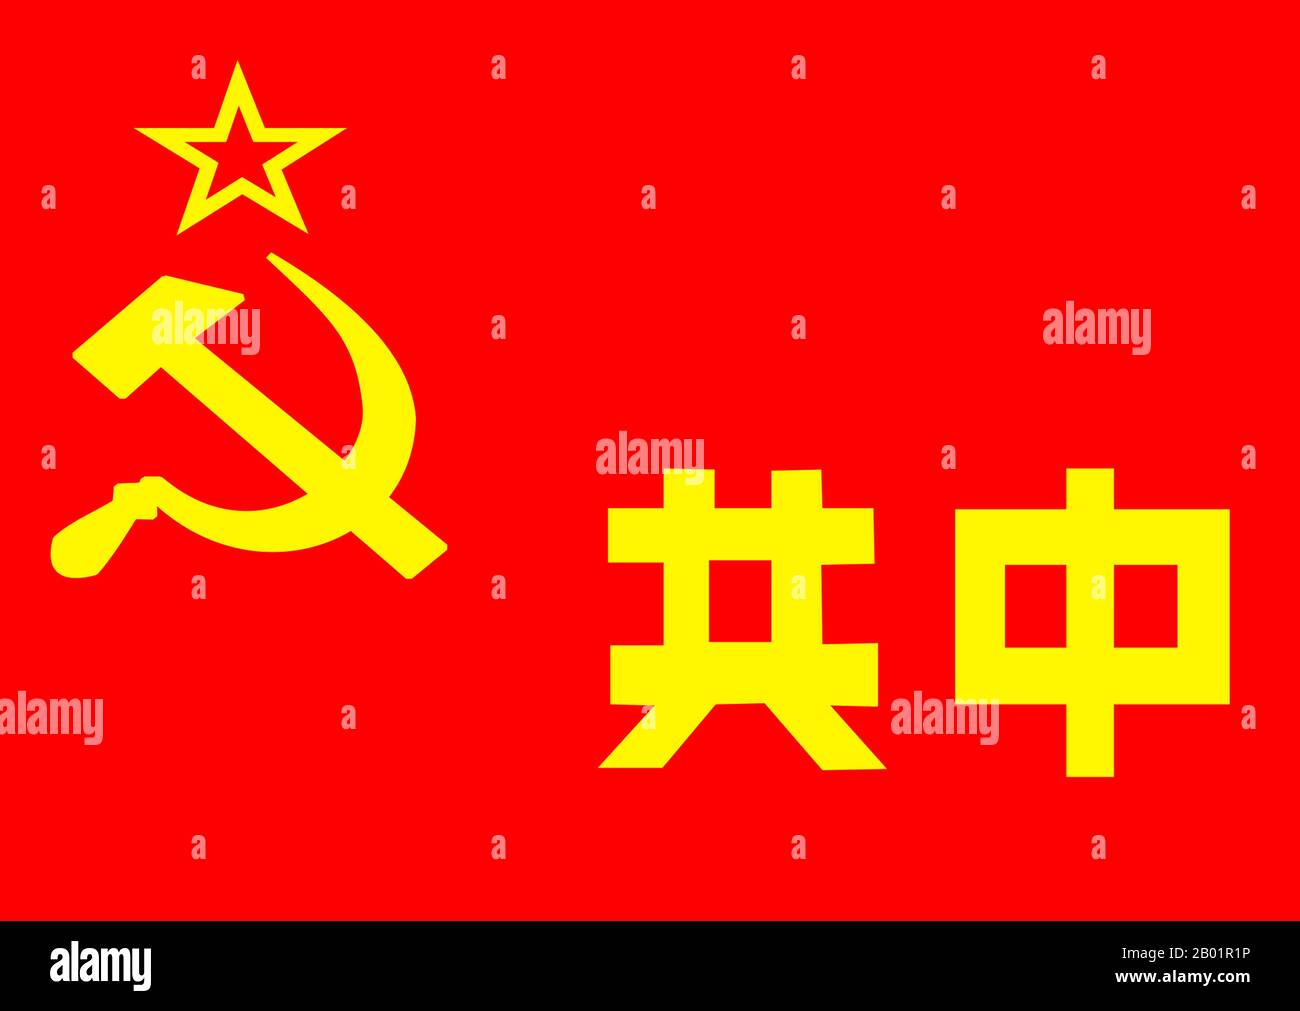 China: Flagge der Chinesischen Sowjetrepublik in Jiangxi, 1931-1934. Der Jiangxi-Fujian-Sowjet (auch Jiangxi-Sowjet genannt) war das größte Teilgebiet der Chinesischen Sowjetrepublik, ein nicht anerkannter Staat, der im November 1931 von Mao Zedong und Zhu de während des chinesischen Bürgerkriegs gegründet wurde. Im Jiangxi-Fujian-Sowjet befand sich die Stadt Ruijin, der Verwaltungssitz und Hauptquartier der CSR-Regierung. Das Jiangxi-Fujian-Basisgebiet wurde von der Ersten Roten Front-Armee verteidigt, aber 1934 wurde es schließlich von der Nationalen Revolutionsarmee der Kuomintang-Regierung überrannt. Stockfoto